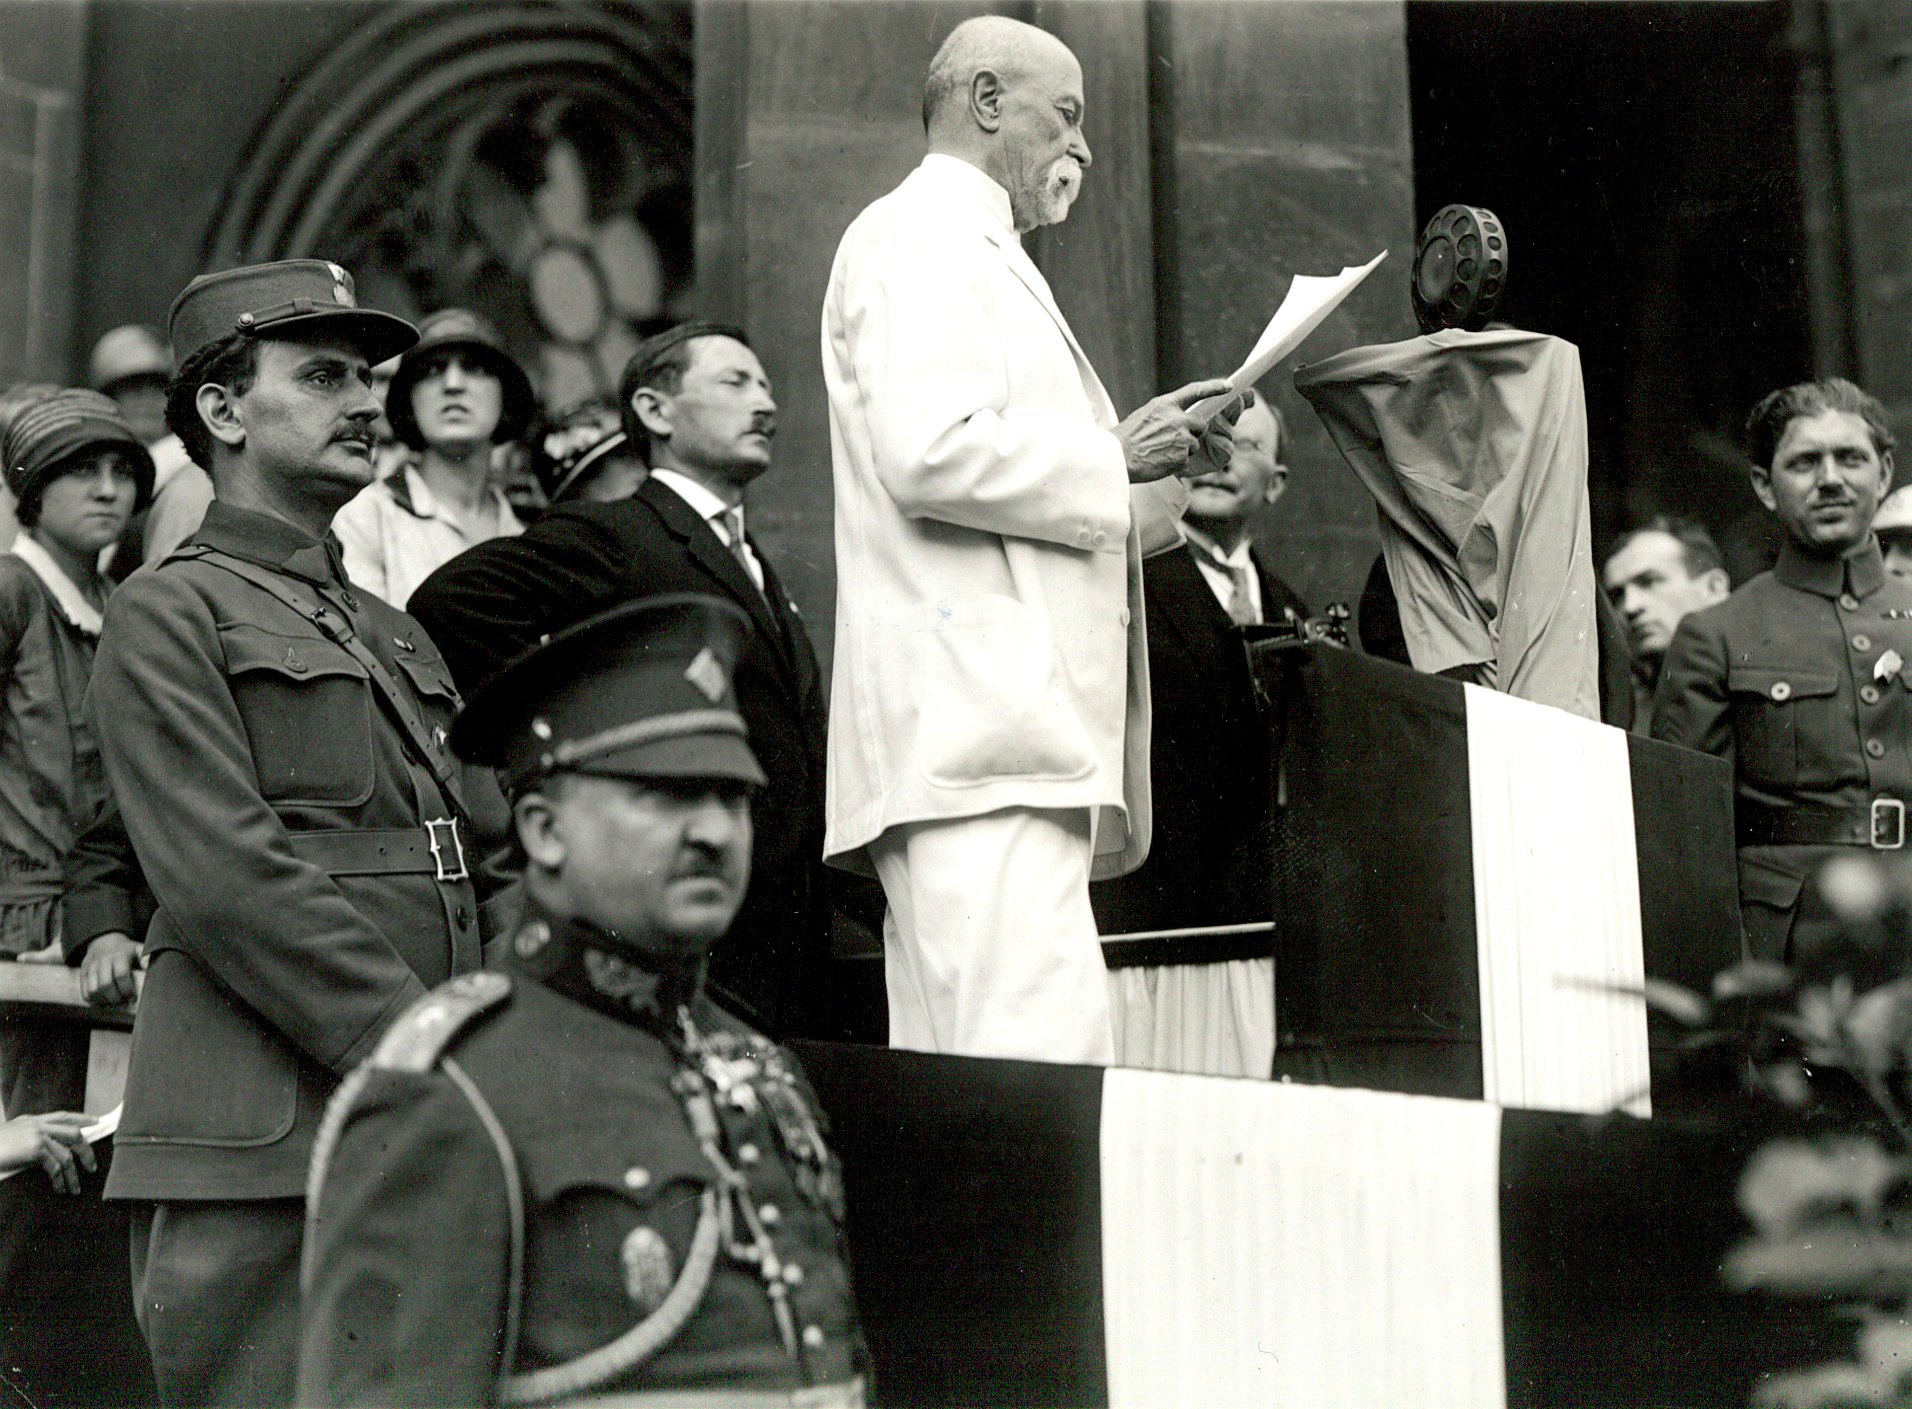 Prezident T. G. Masaryk na sjezdu československých legionářů 1. července 1928 na Staroměstském náměstí v Praze